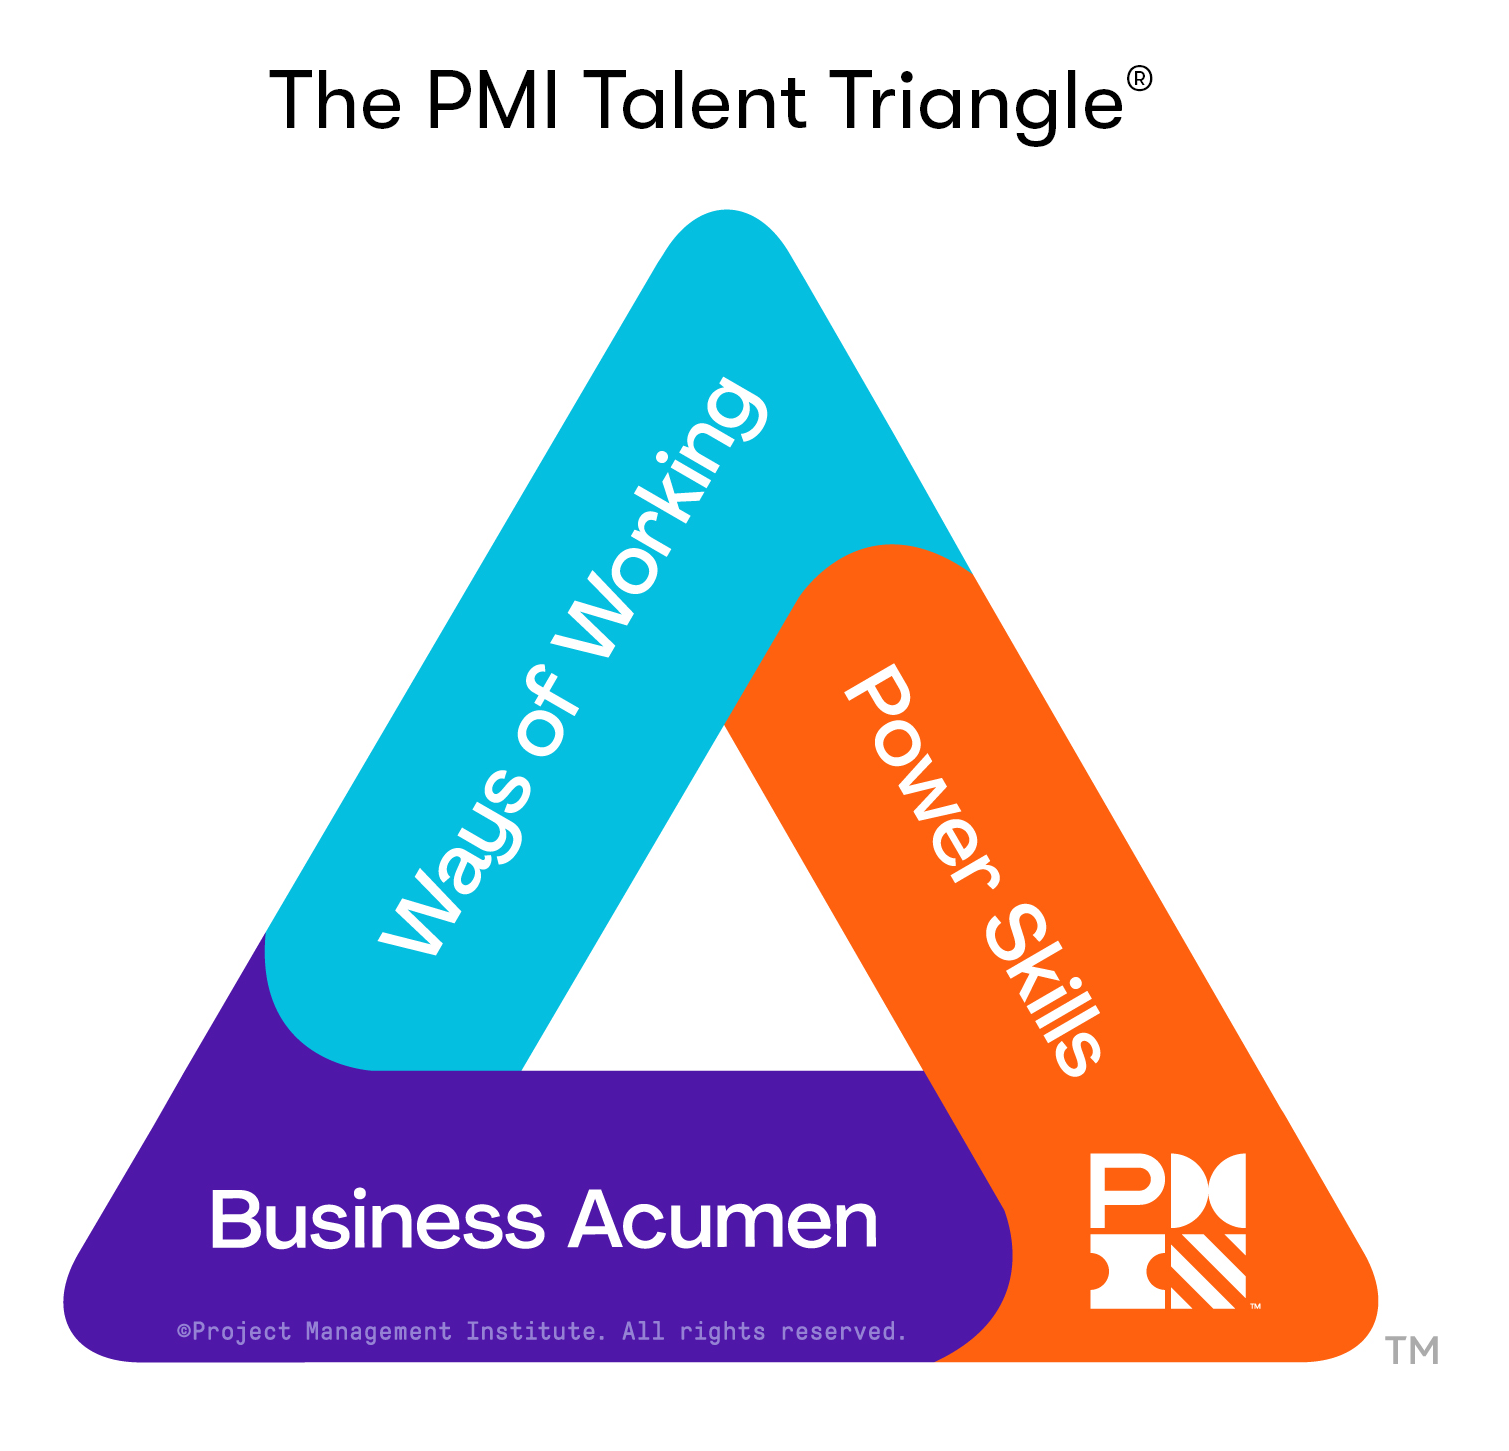 The PMI Talent Triangle